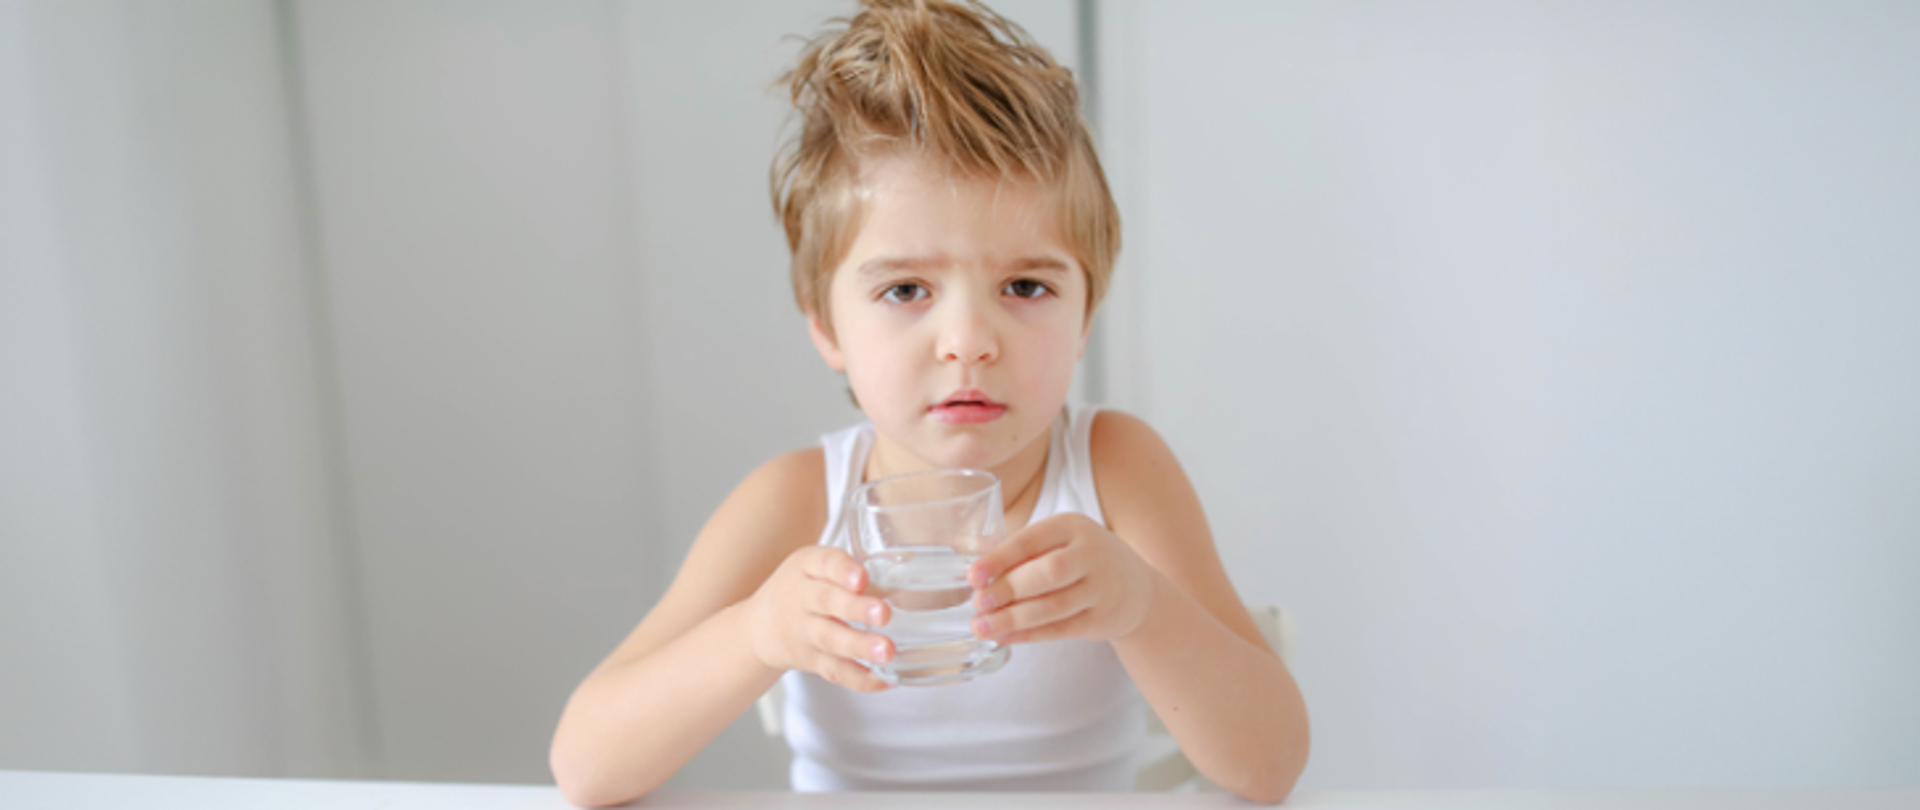 Dlaczego wciąż przypominamy o piciu wody?